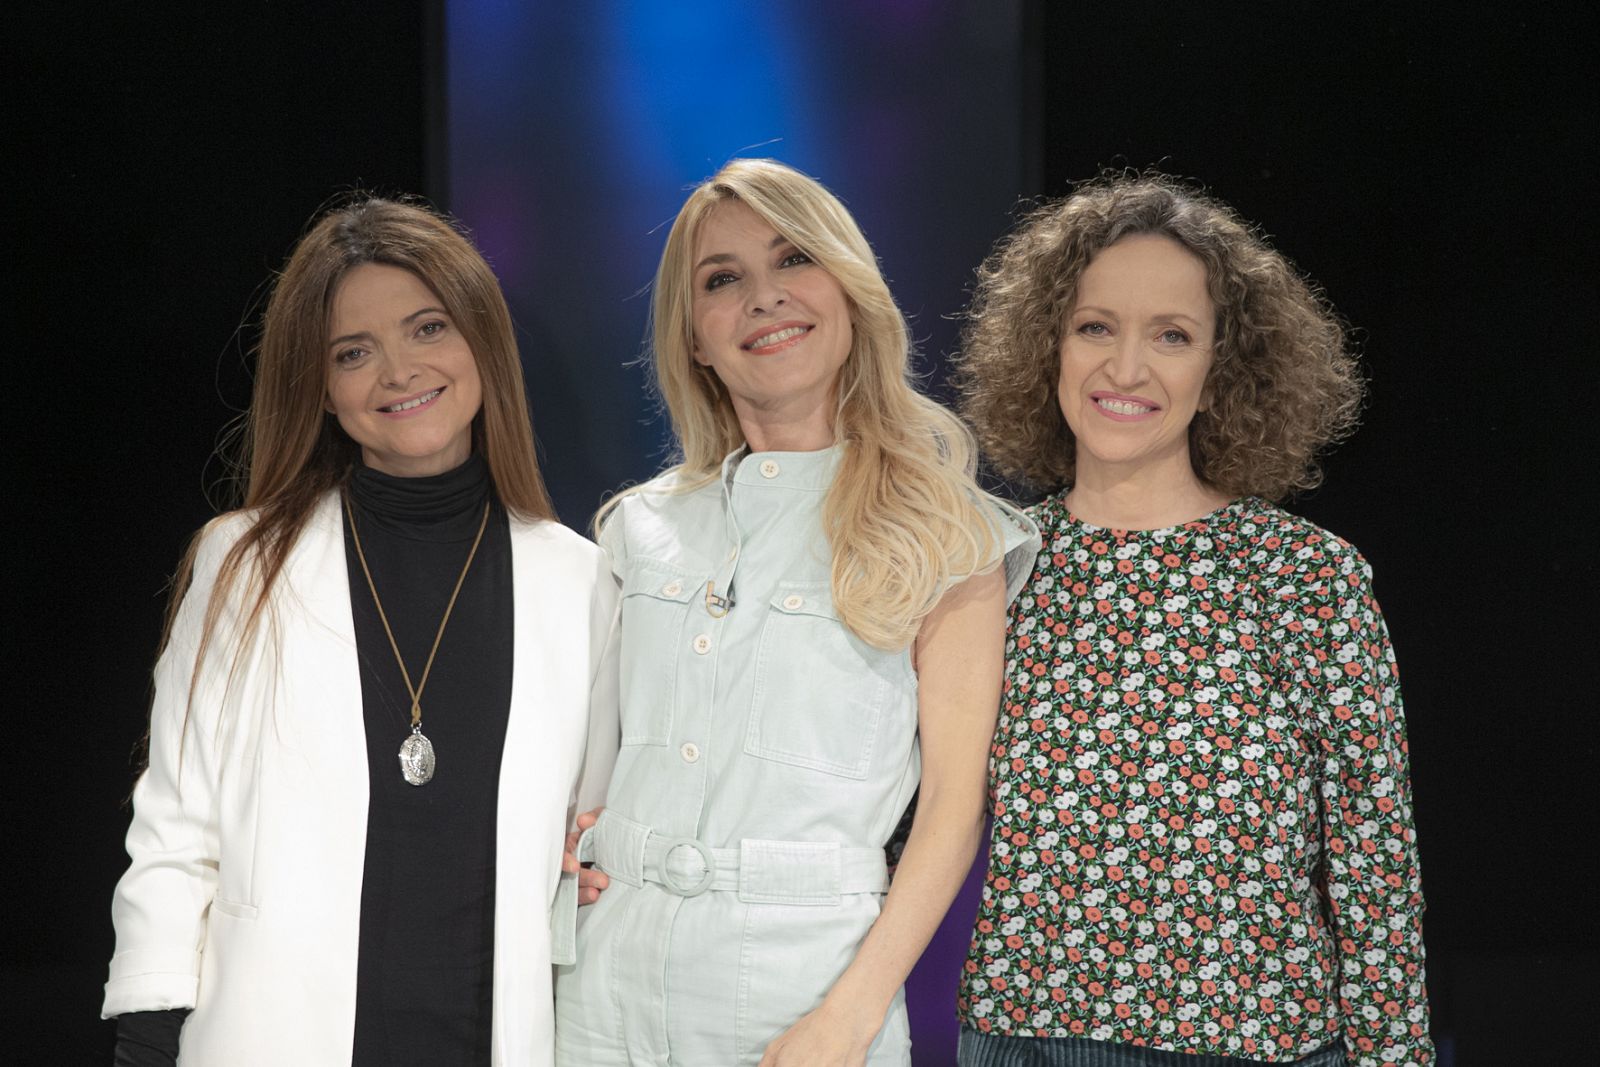  Clara Arnal, Cayetana Guillén Cuervo y Daniela Fejerman en 'Versión Española'